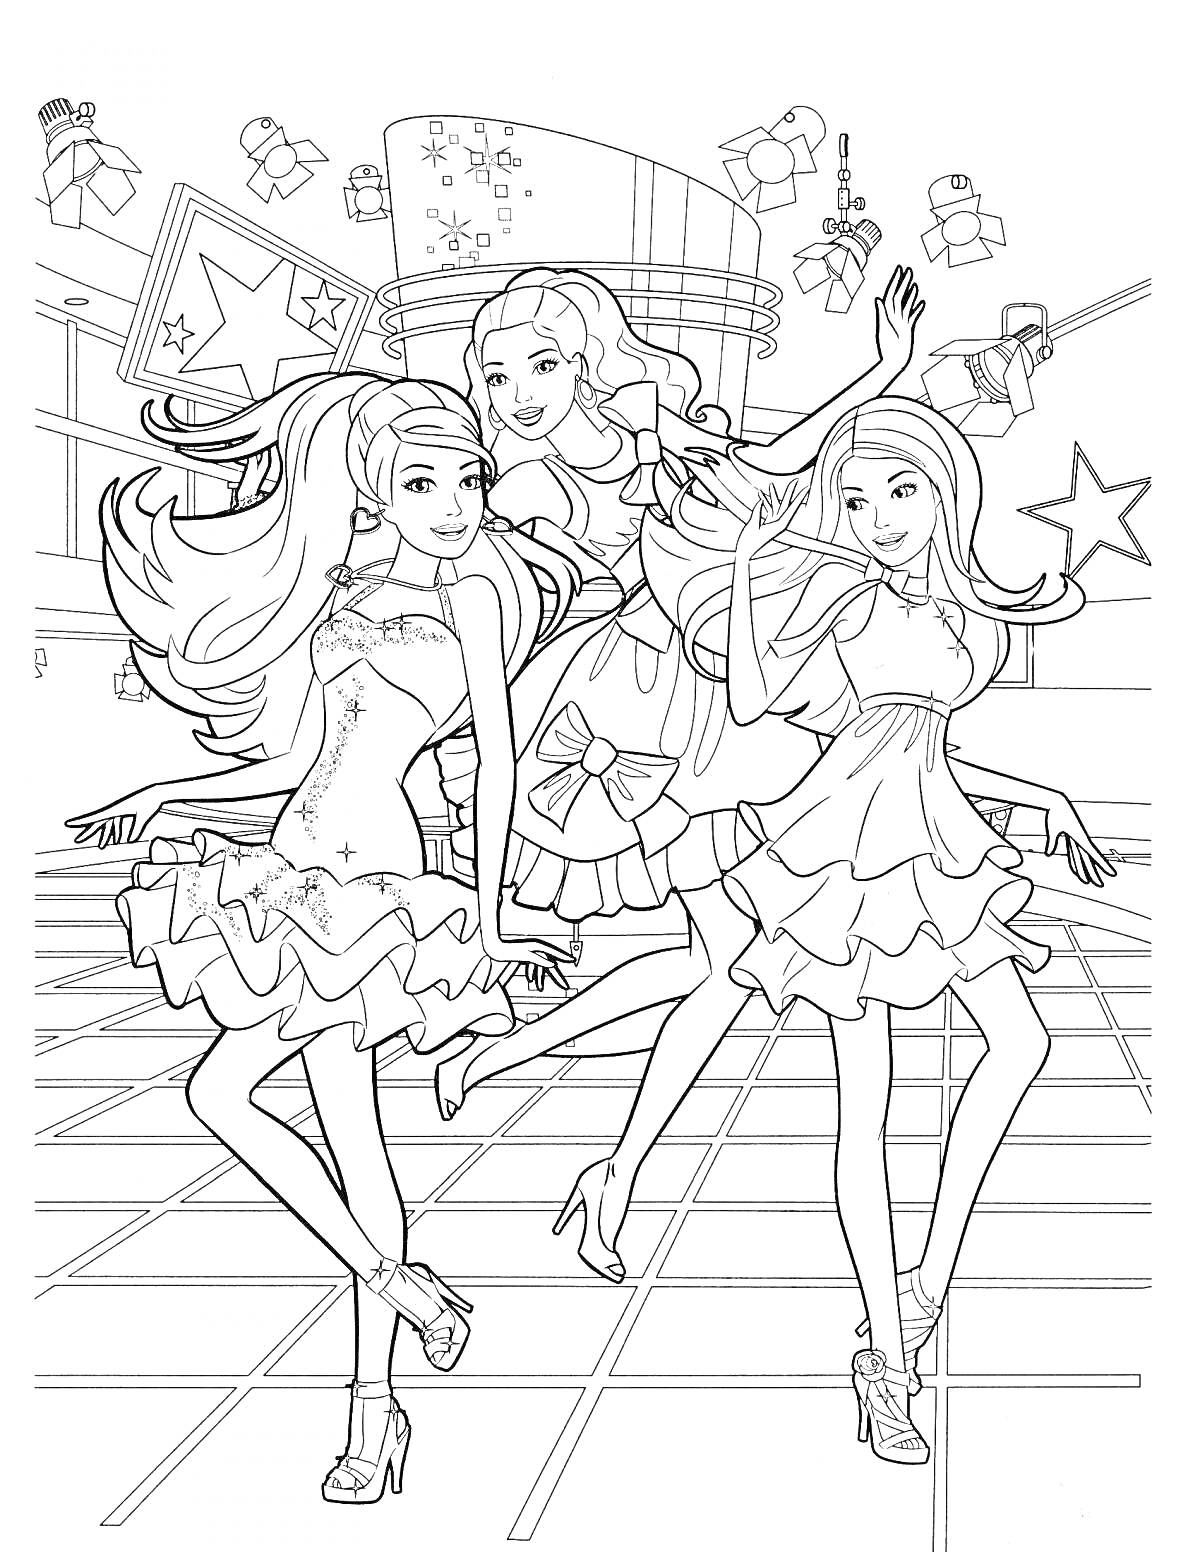 Три девушки-барби на танцполе в нарядных платьях, фон с подарками и звездами